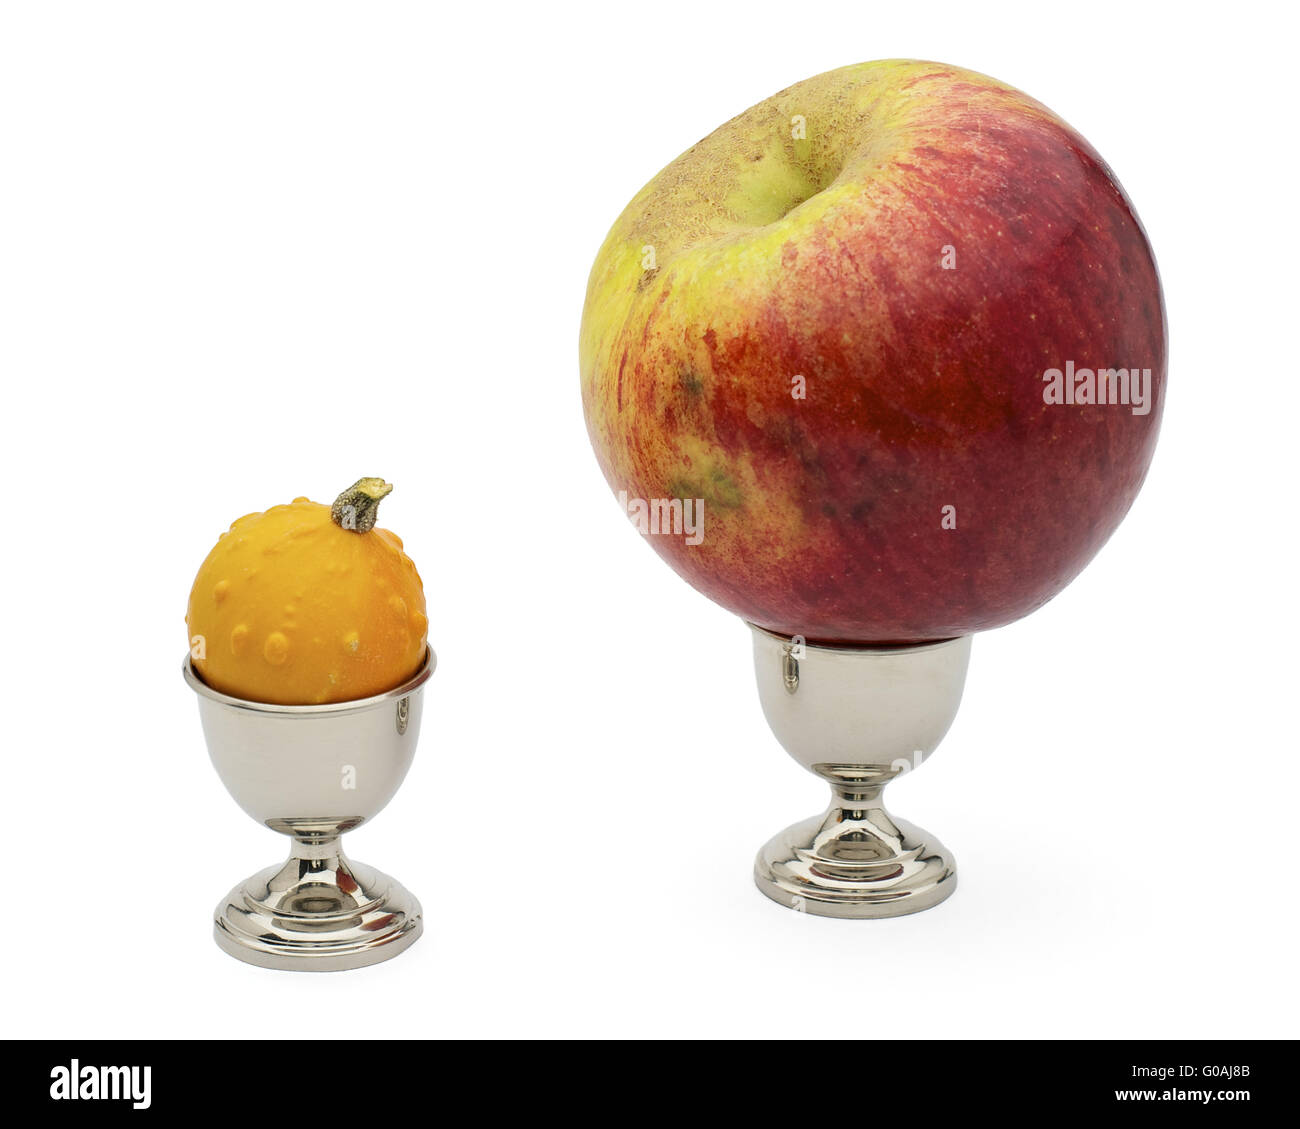 Citrouille et Apple en cm - Comparaison de taille Banque D'Images